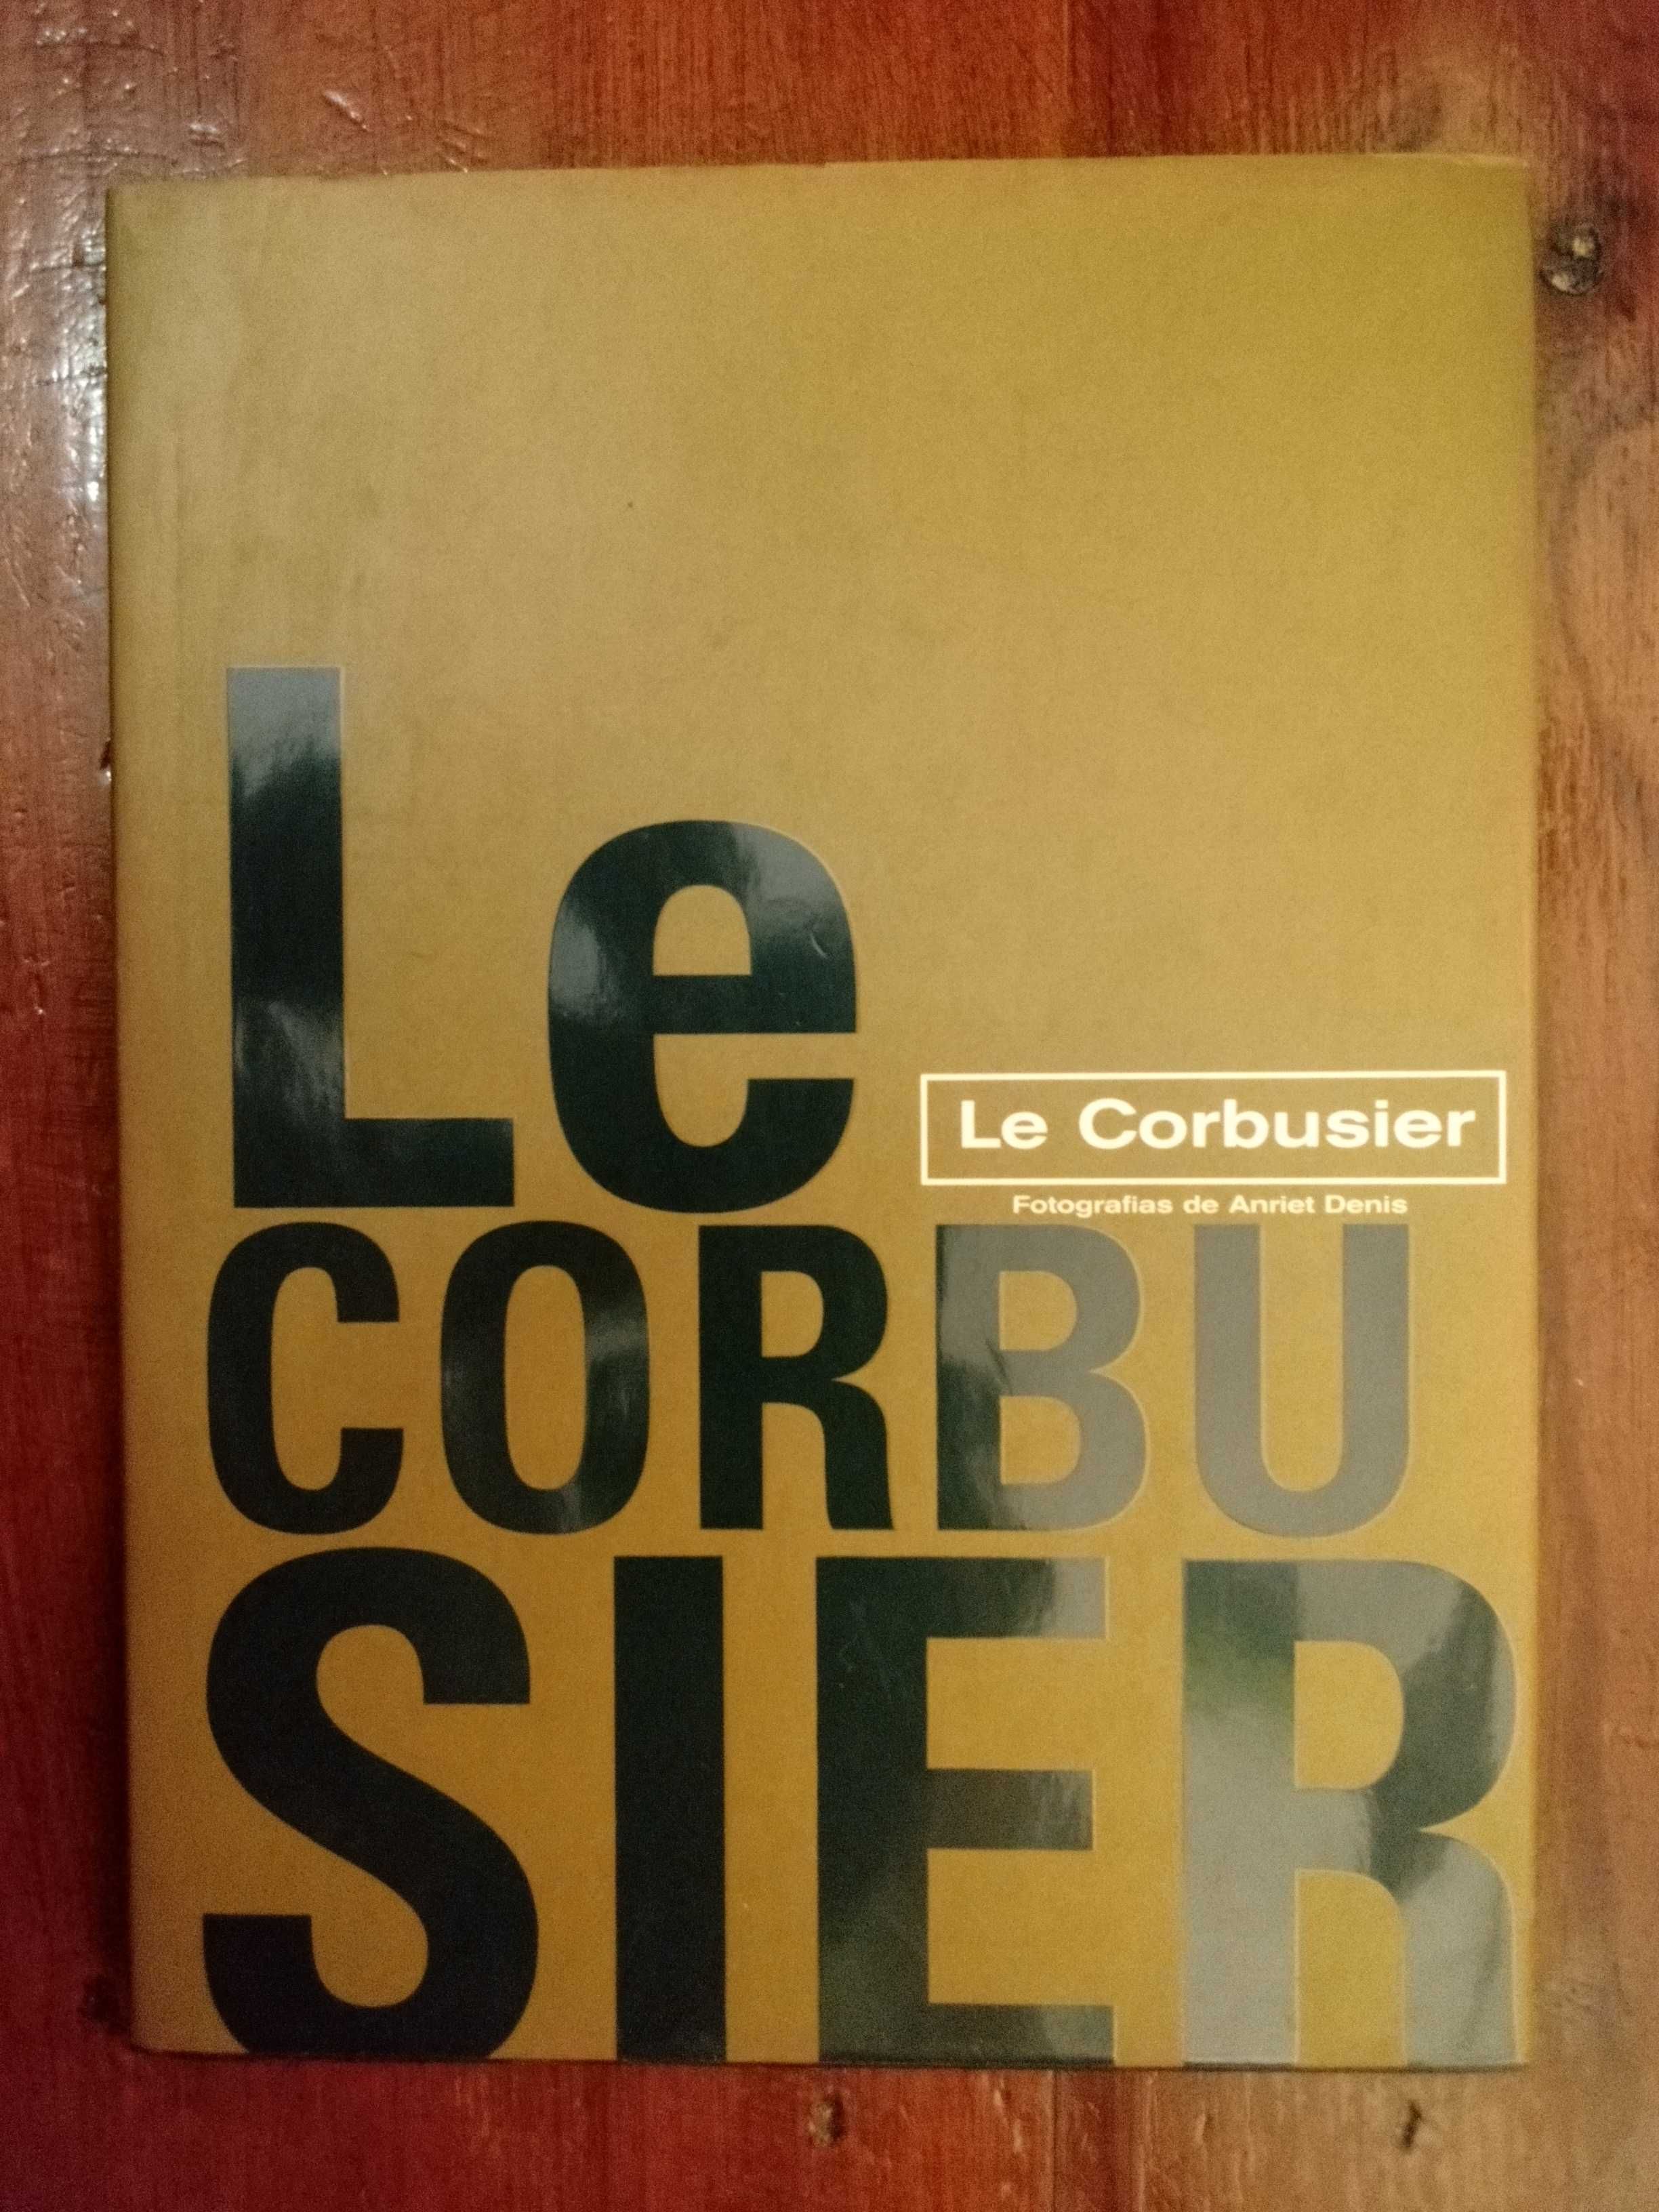 Le corbusier - Anriet Denis